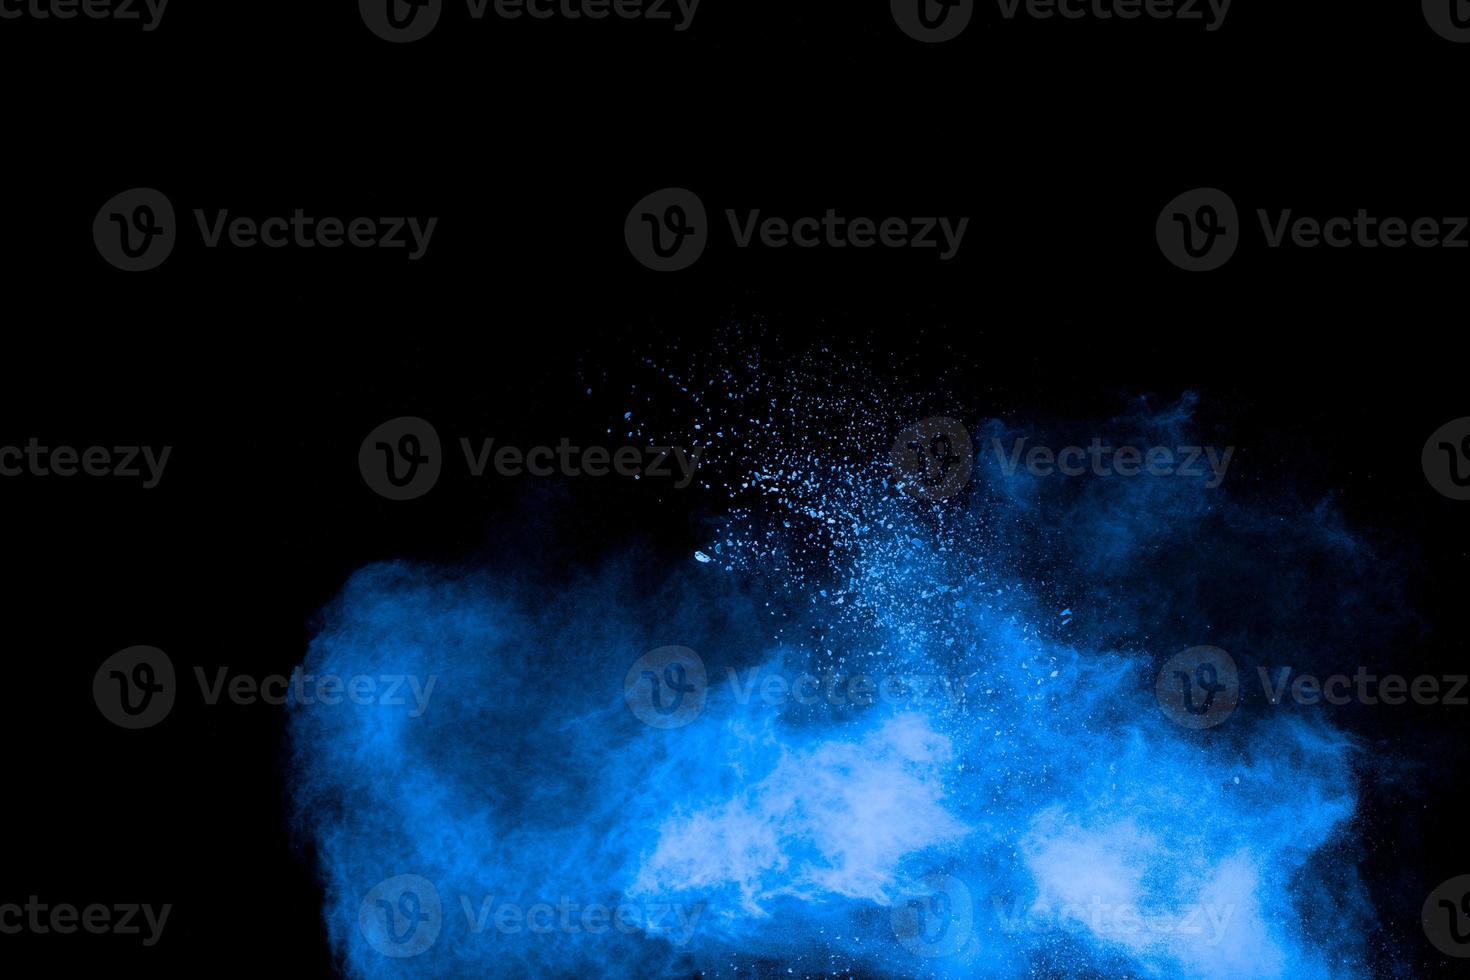 blaue pulverexplosionswolke auf schwarzem hintergrund. gestartete blaue staubpartikel spritzen auf hintergrund. foto